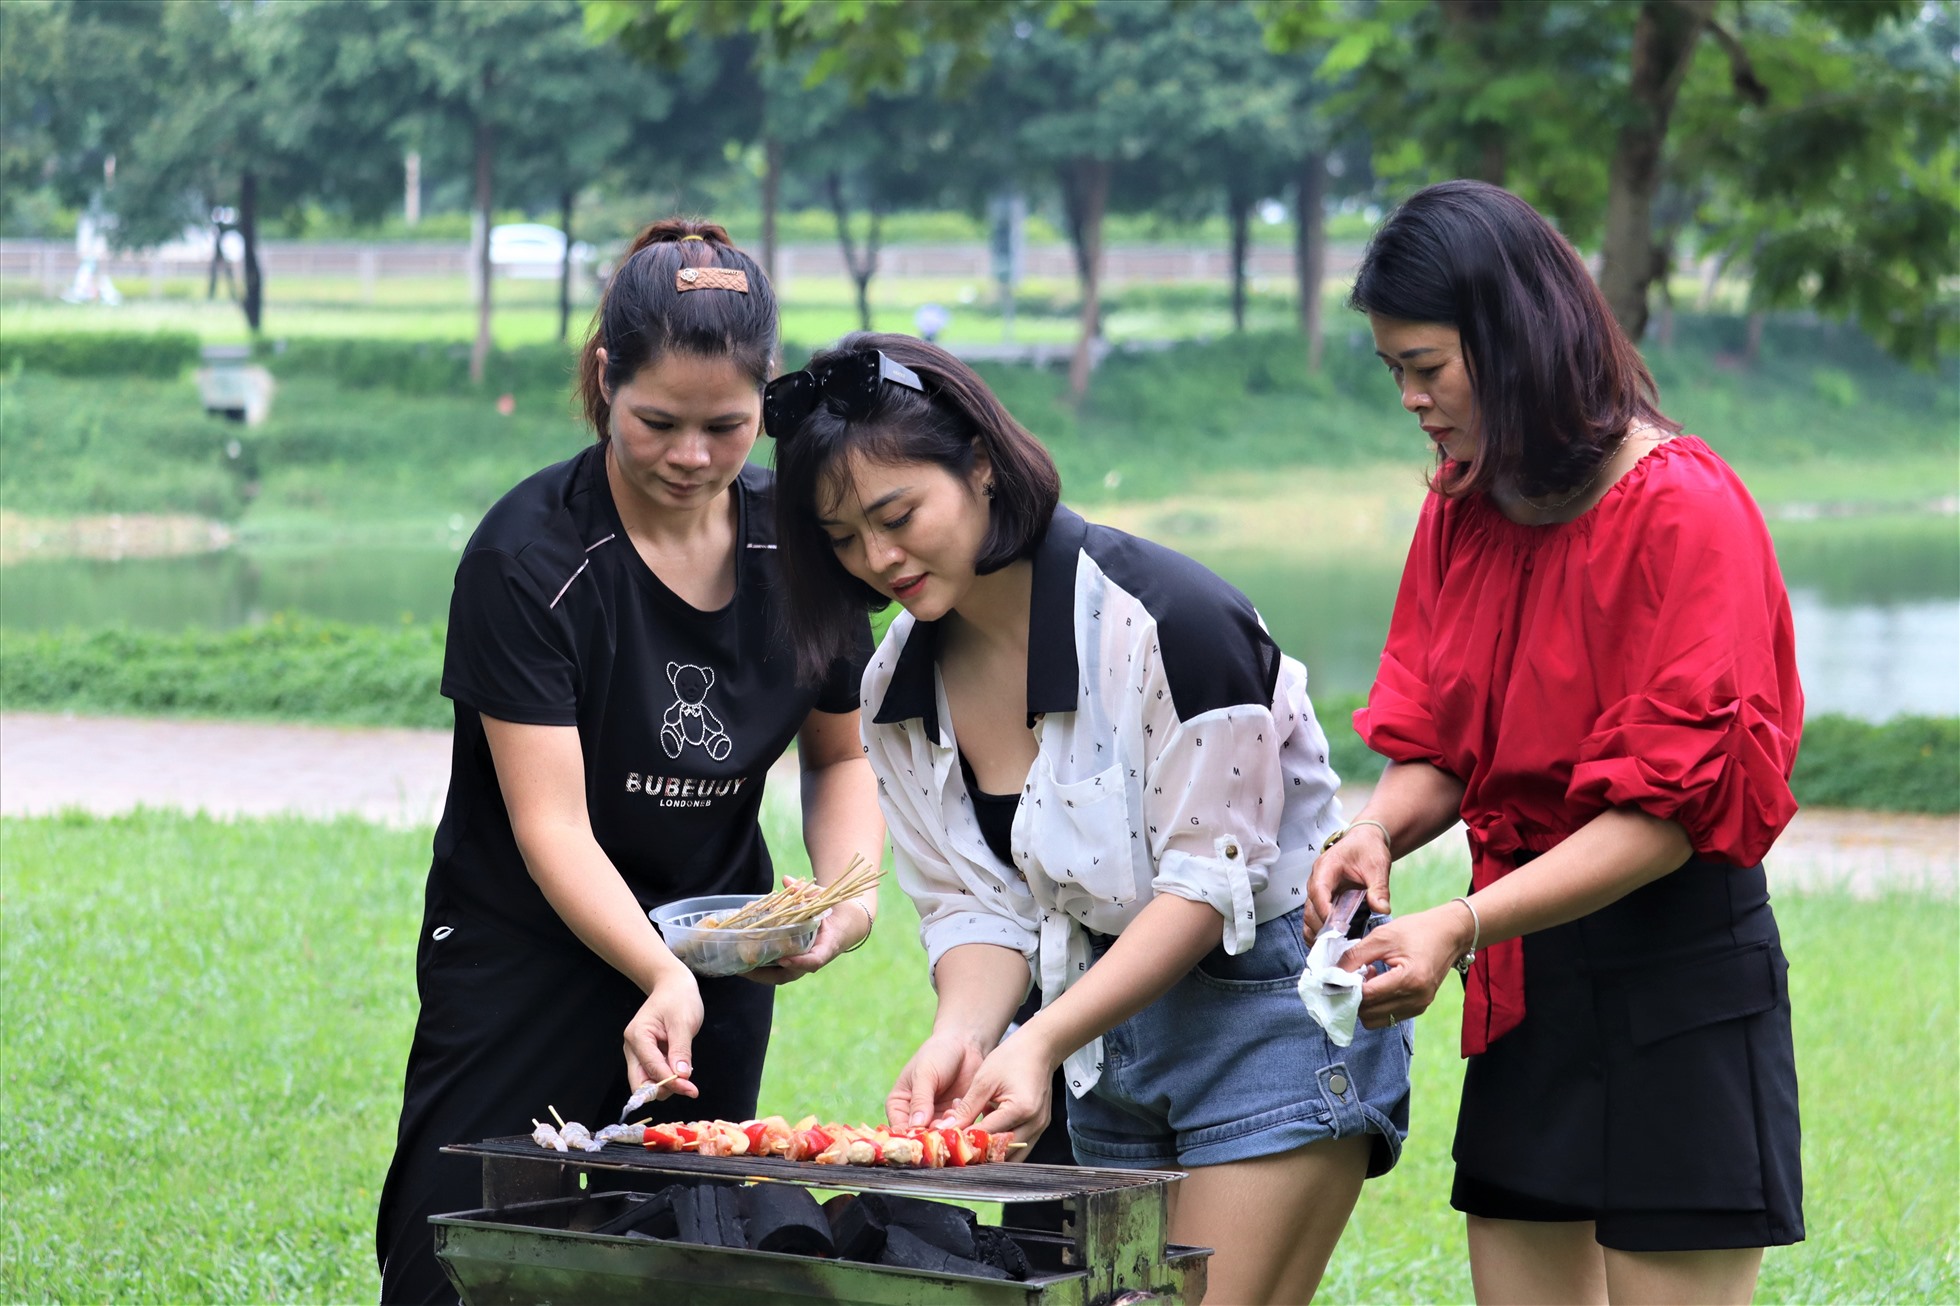 Chị Nguyễn Thị Phương Hoa (người ở giữa, Thanh Trì, Hà Nội) cùng nhóm bạn nướng thịt để chuẩn bị cho buổi tiệc nhỏ ở công viên. Chị Hoa cho biết, chi phí thuê bếp nướng (bao gồm than hoa) là 300.000 đồng, còn đồ nướng đã được ướp sẵn ở nhà.